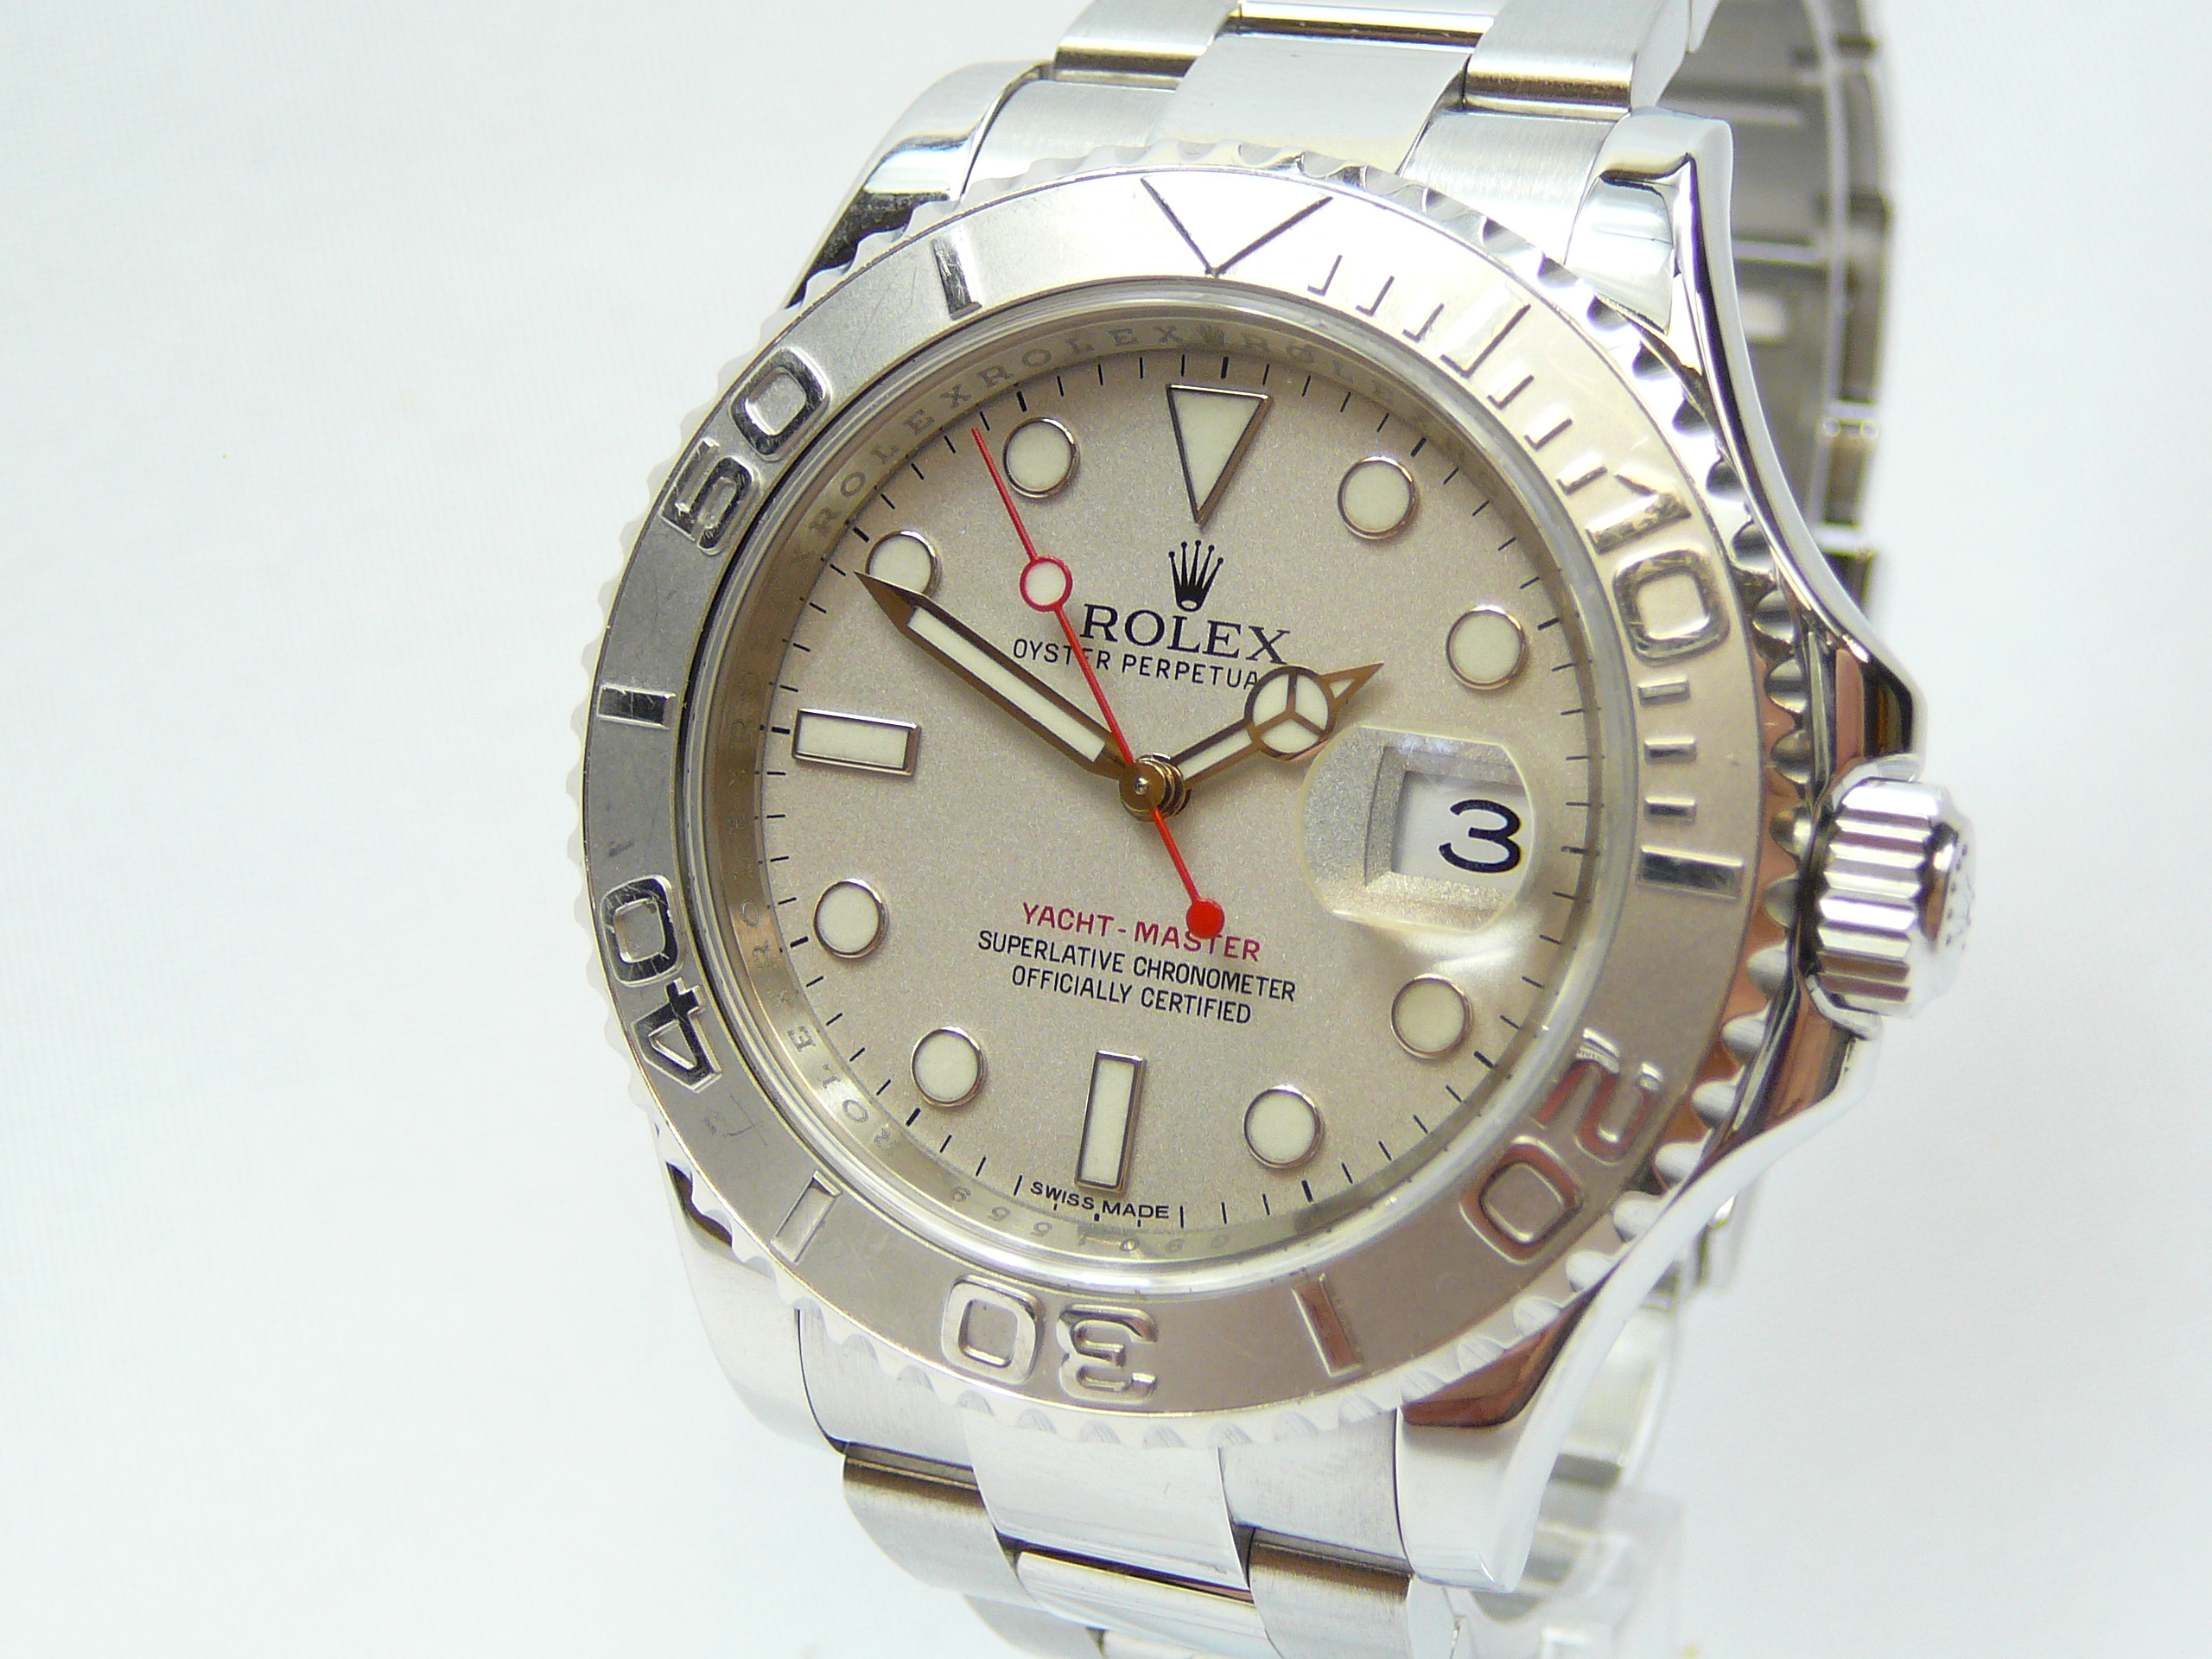 Gents Rolex Wrist Watch - Image 2 of 5